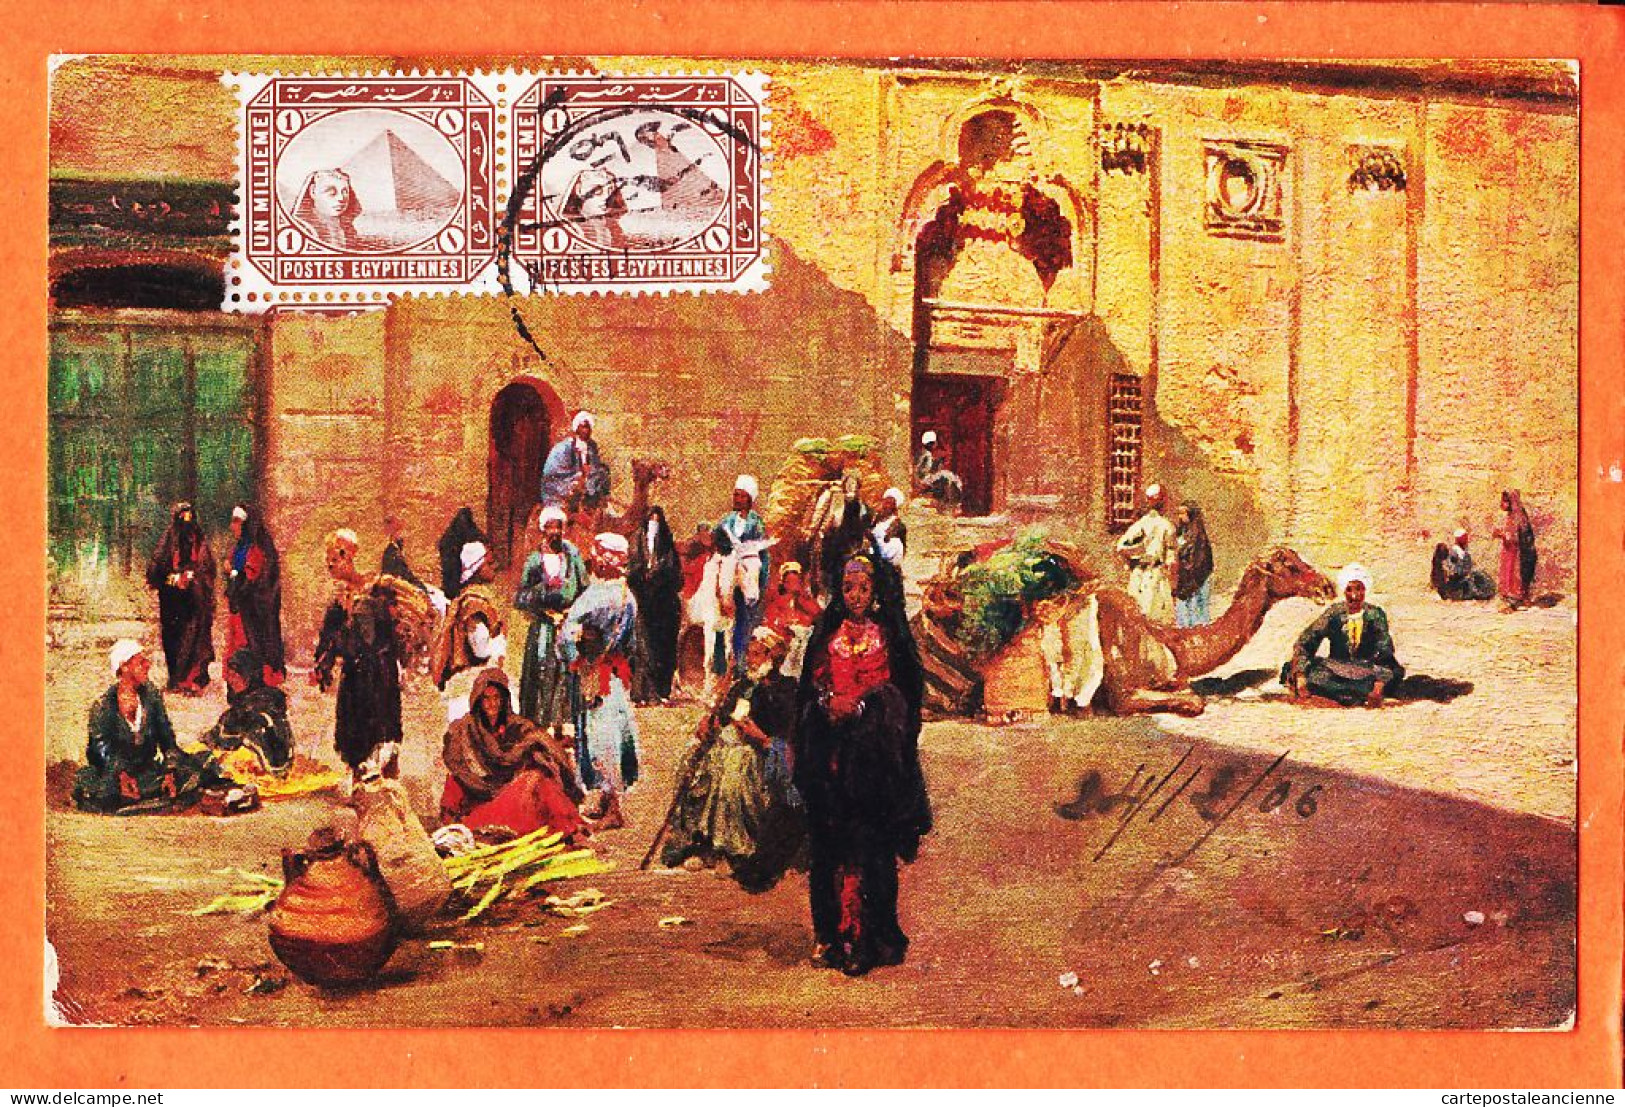 09954 / ⭐ LE CAIRE Egypte ◉ Scène De Rue Types People CAIRO KAIRO 1906 à PENTECOUTEAU Paris ◉ Il. WUTTKE ? ◉ Litho R-128 - Kairo